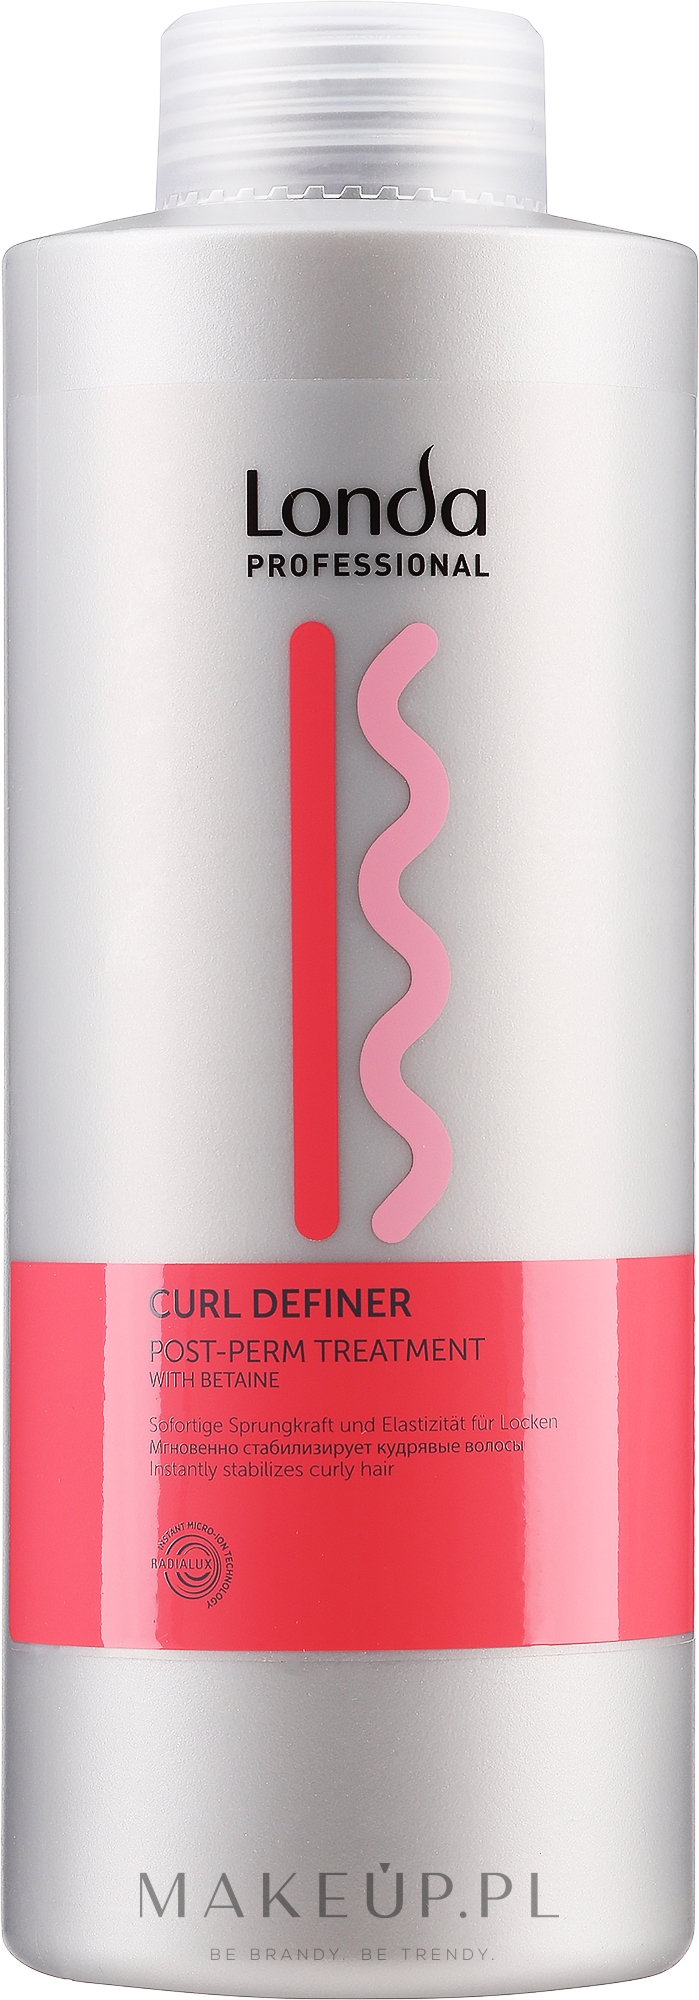 Stabilizator po trwałej ondulacji - Londa Professional Curl Definer — Zdjęcie 1000 ml